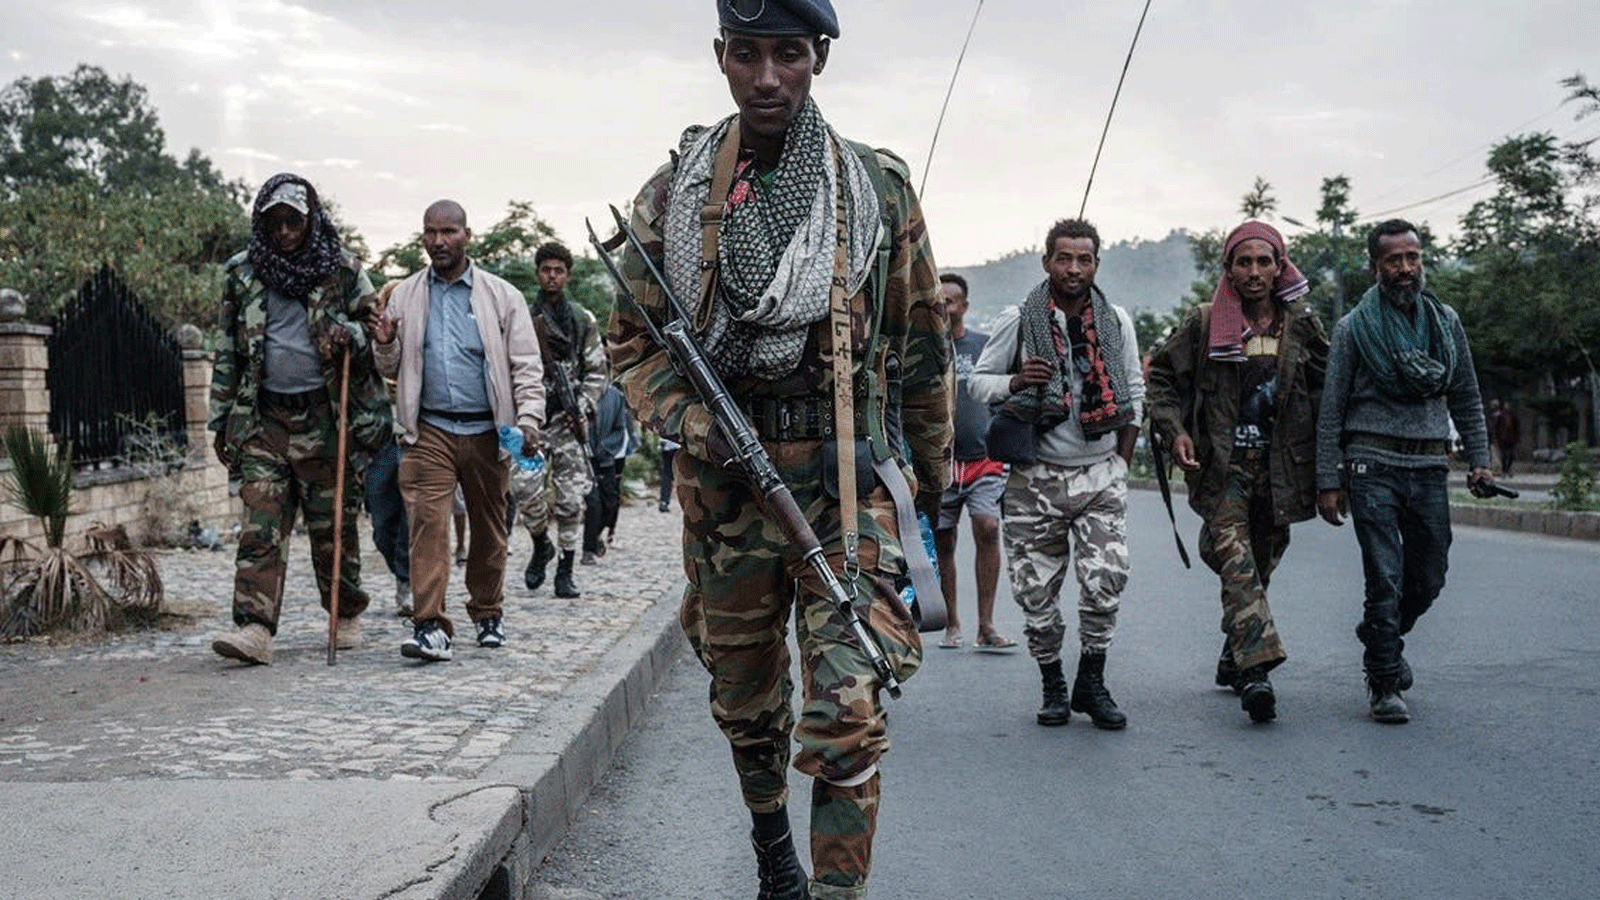 صورة التُقِطَت بتاريخ 29 حزيران يونيو 2021، للمتمردين المؤيدين لـ TPLF (جبهة تحرير شعب تيغراي) بعد ثماني ساعات من المشي في ميكيلي، عاصمة منطقة تيغراي، إثيوبيا.